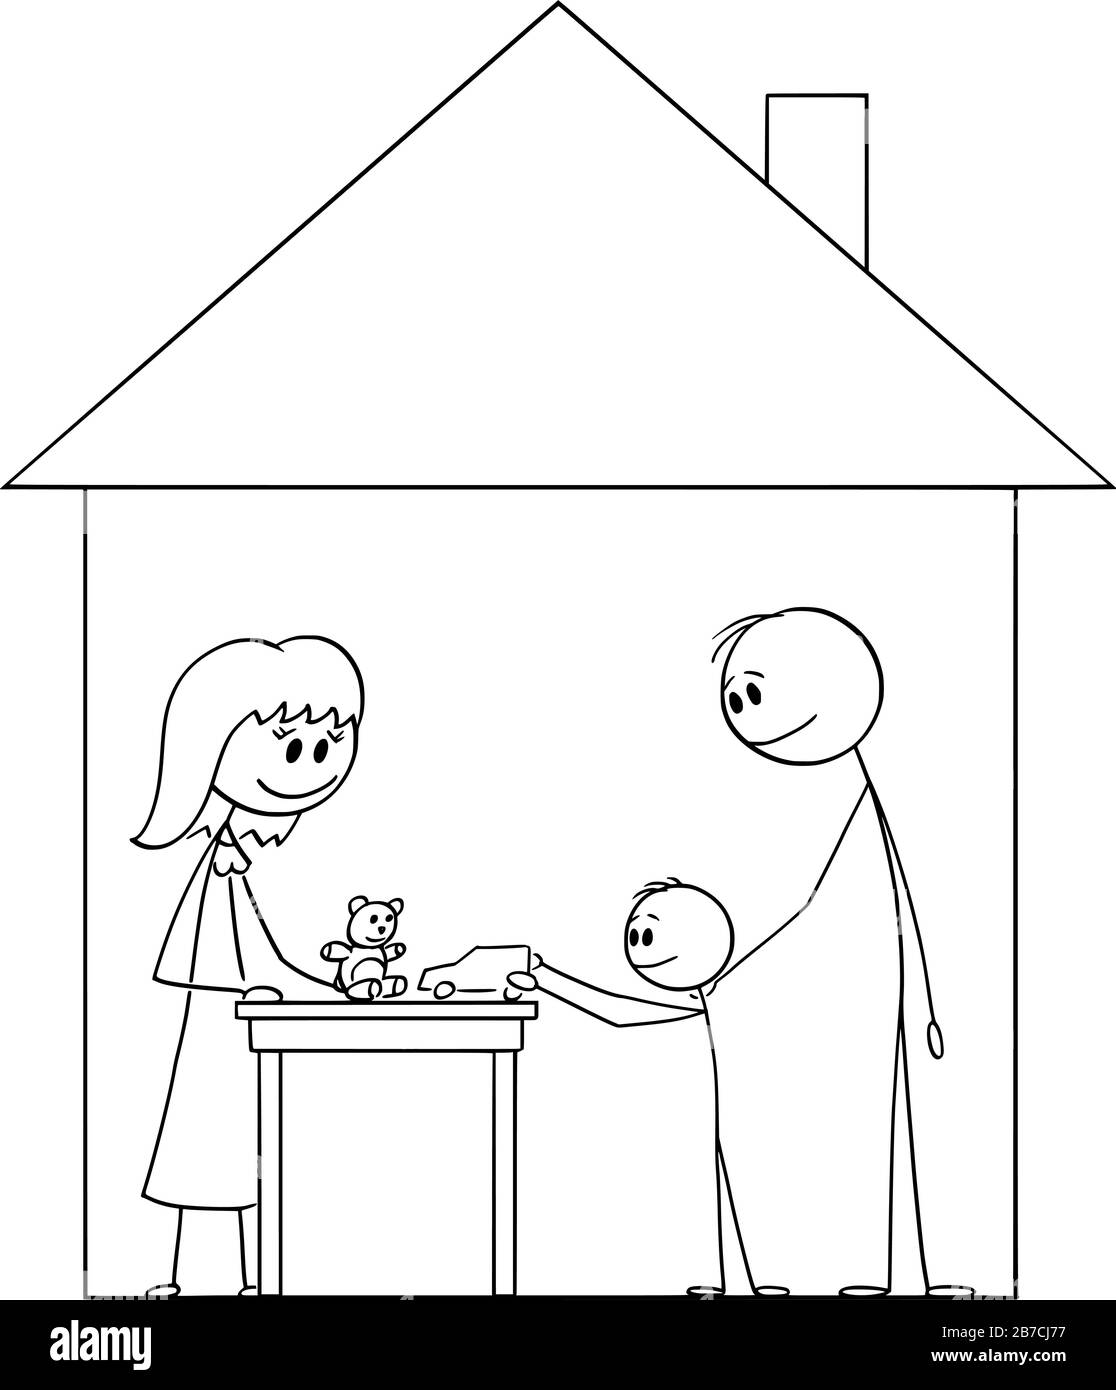 Vector Cartoon Stick Figure Zeichnung konzeptionelle Illustration der glücklichen Familie von Mutter, Vater und Kind, die im Familienhaus leben. Stock Vektor